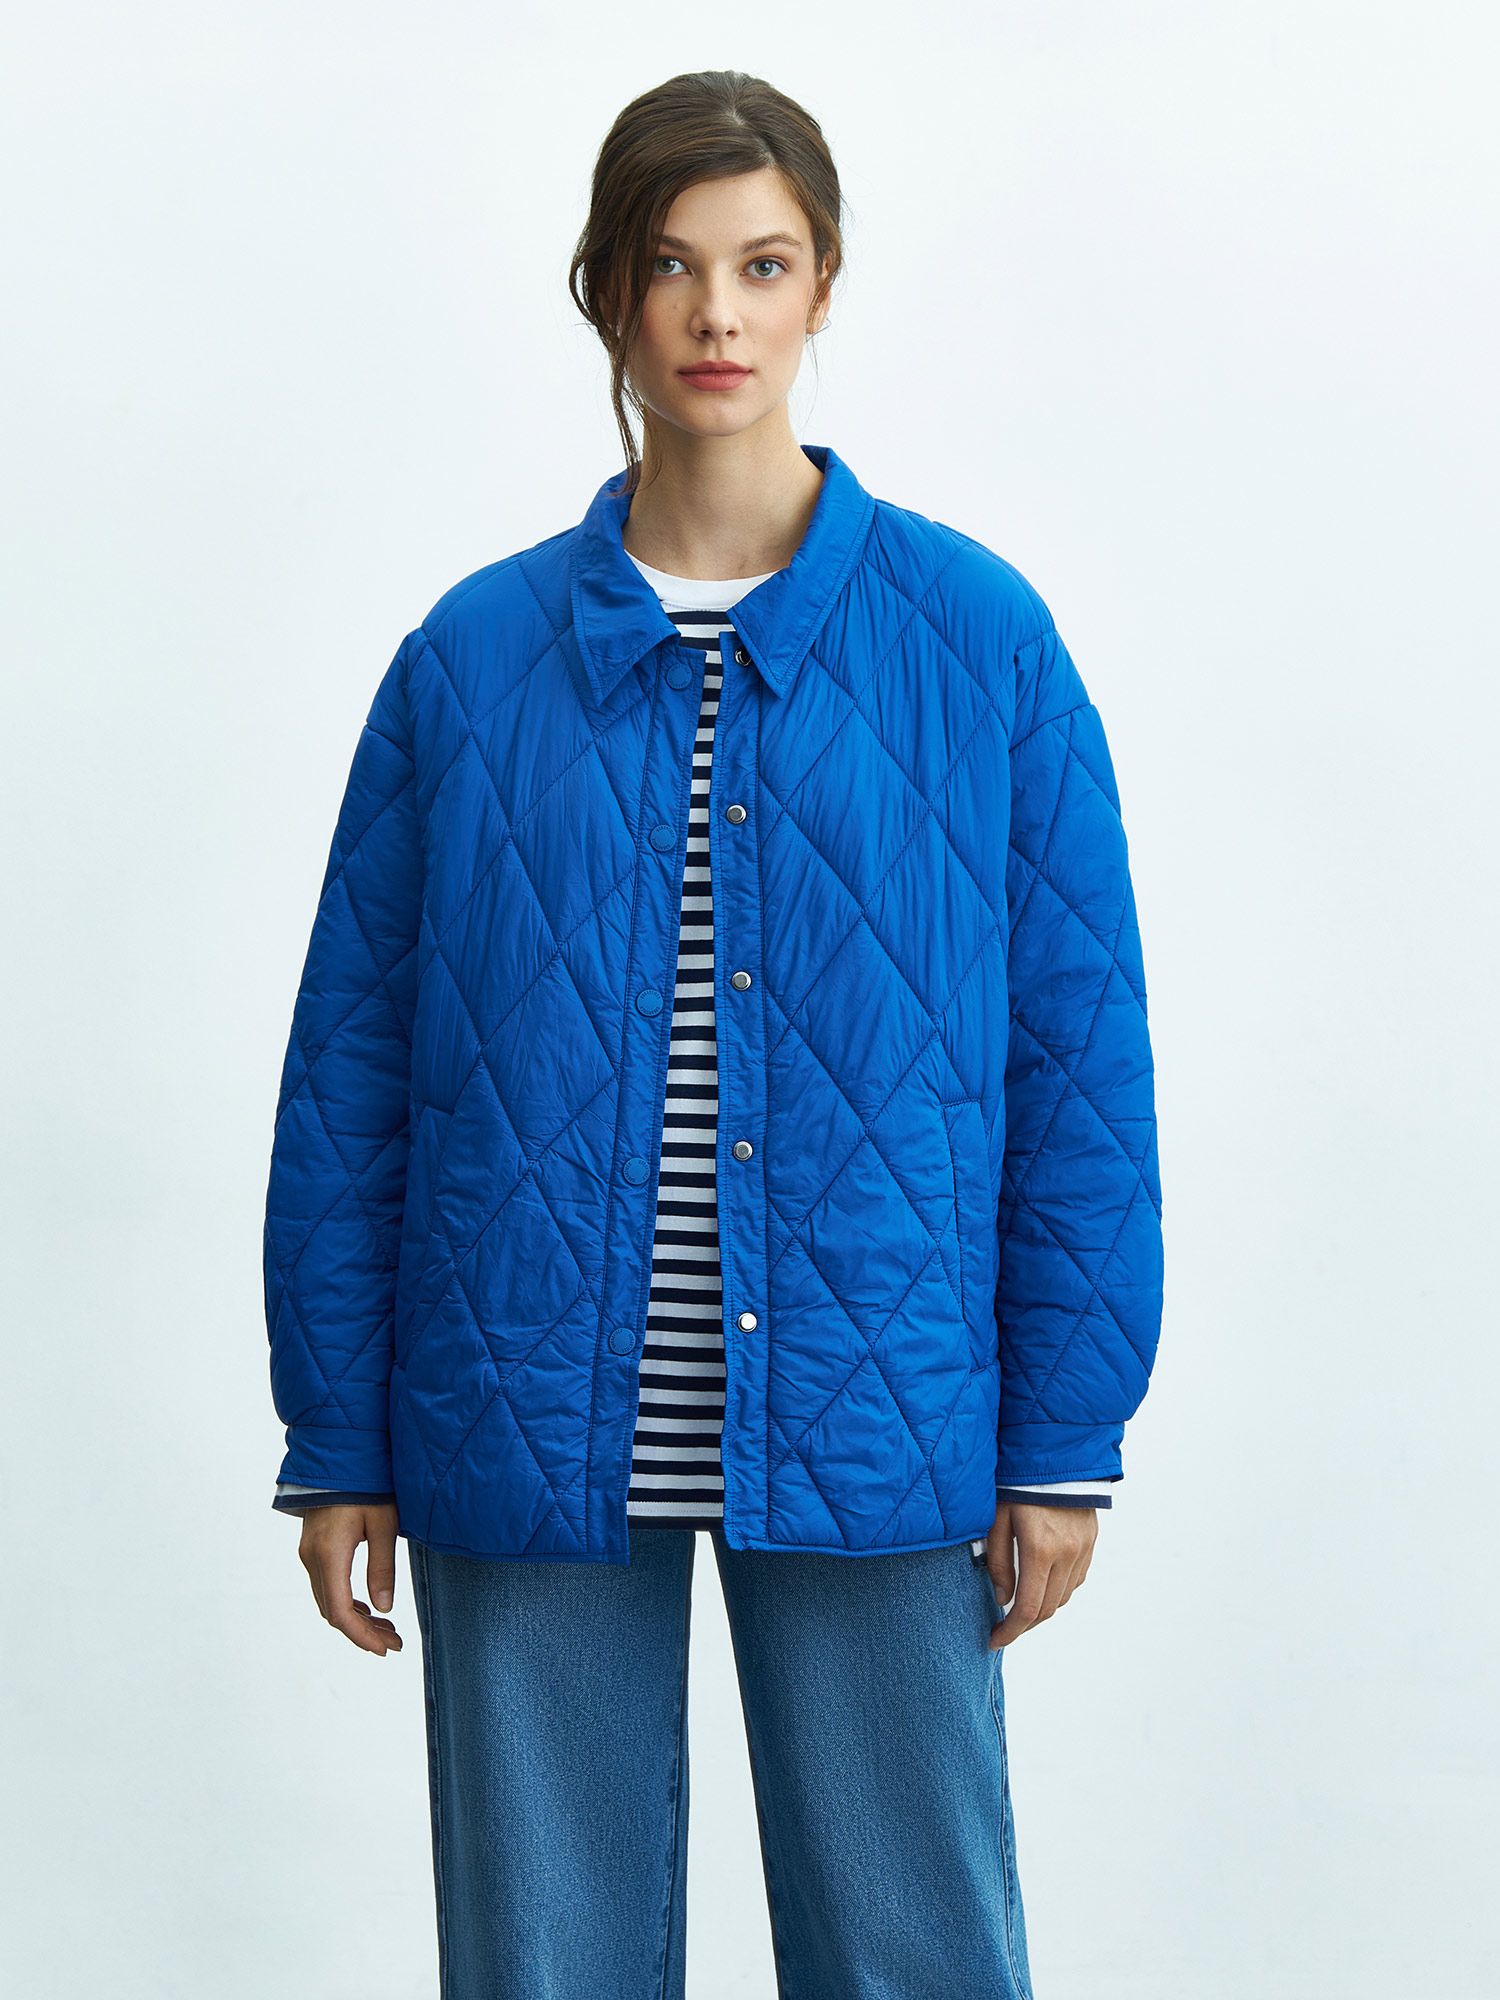 Женская стеганая куртка Soft Nylon. Изображение 1